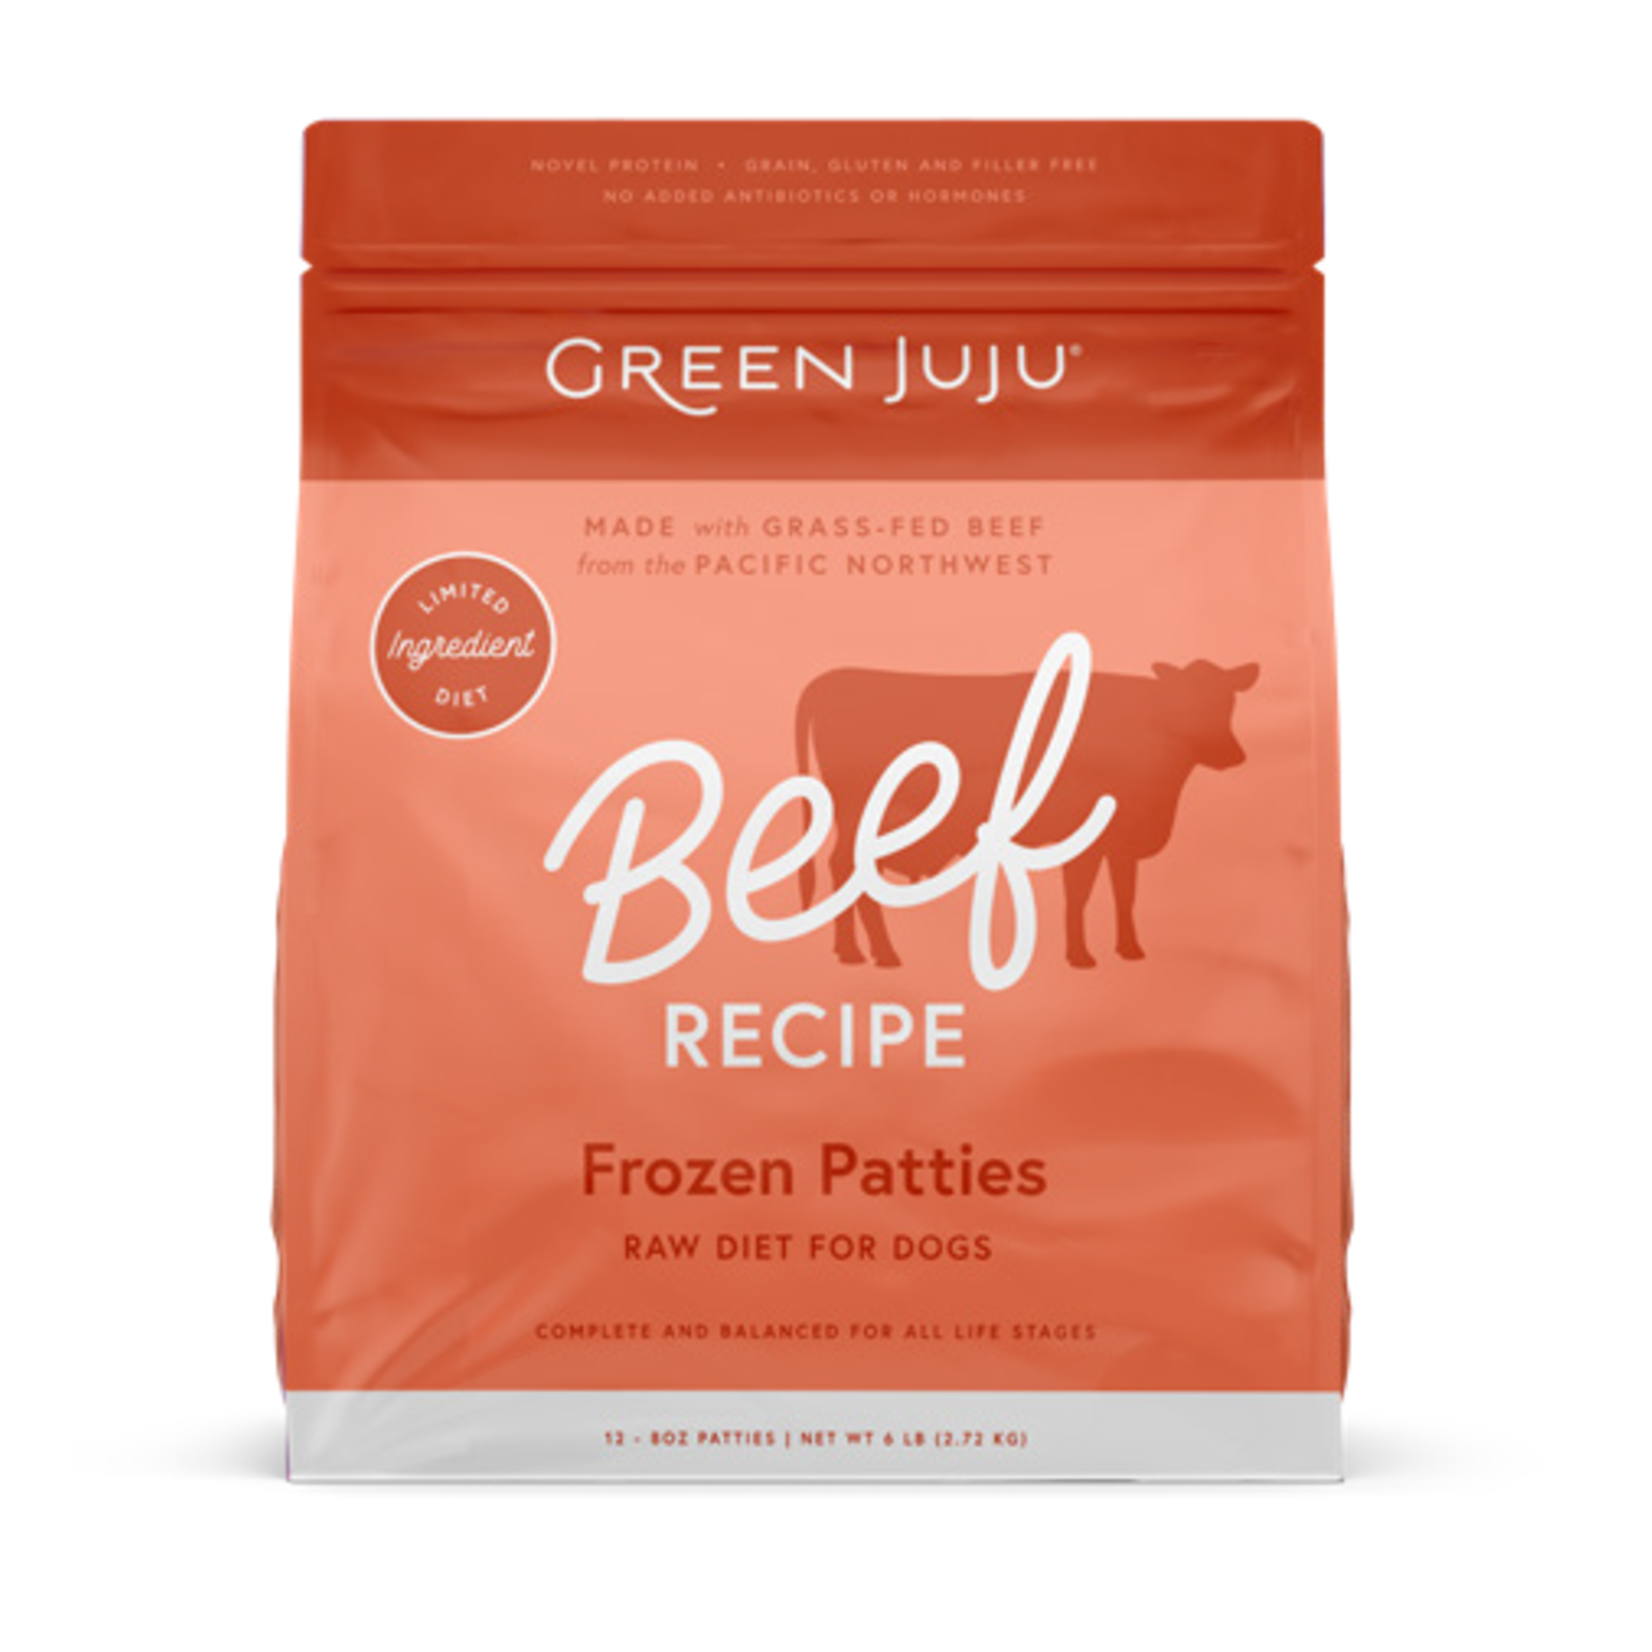 Green Juju Green Juju Frozen Patties - Beef Recipe Raw Diet